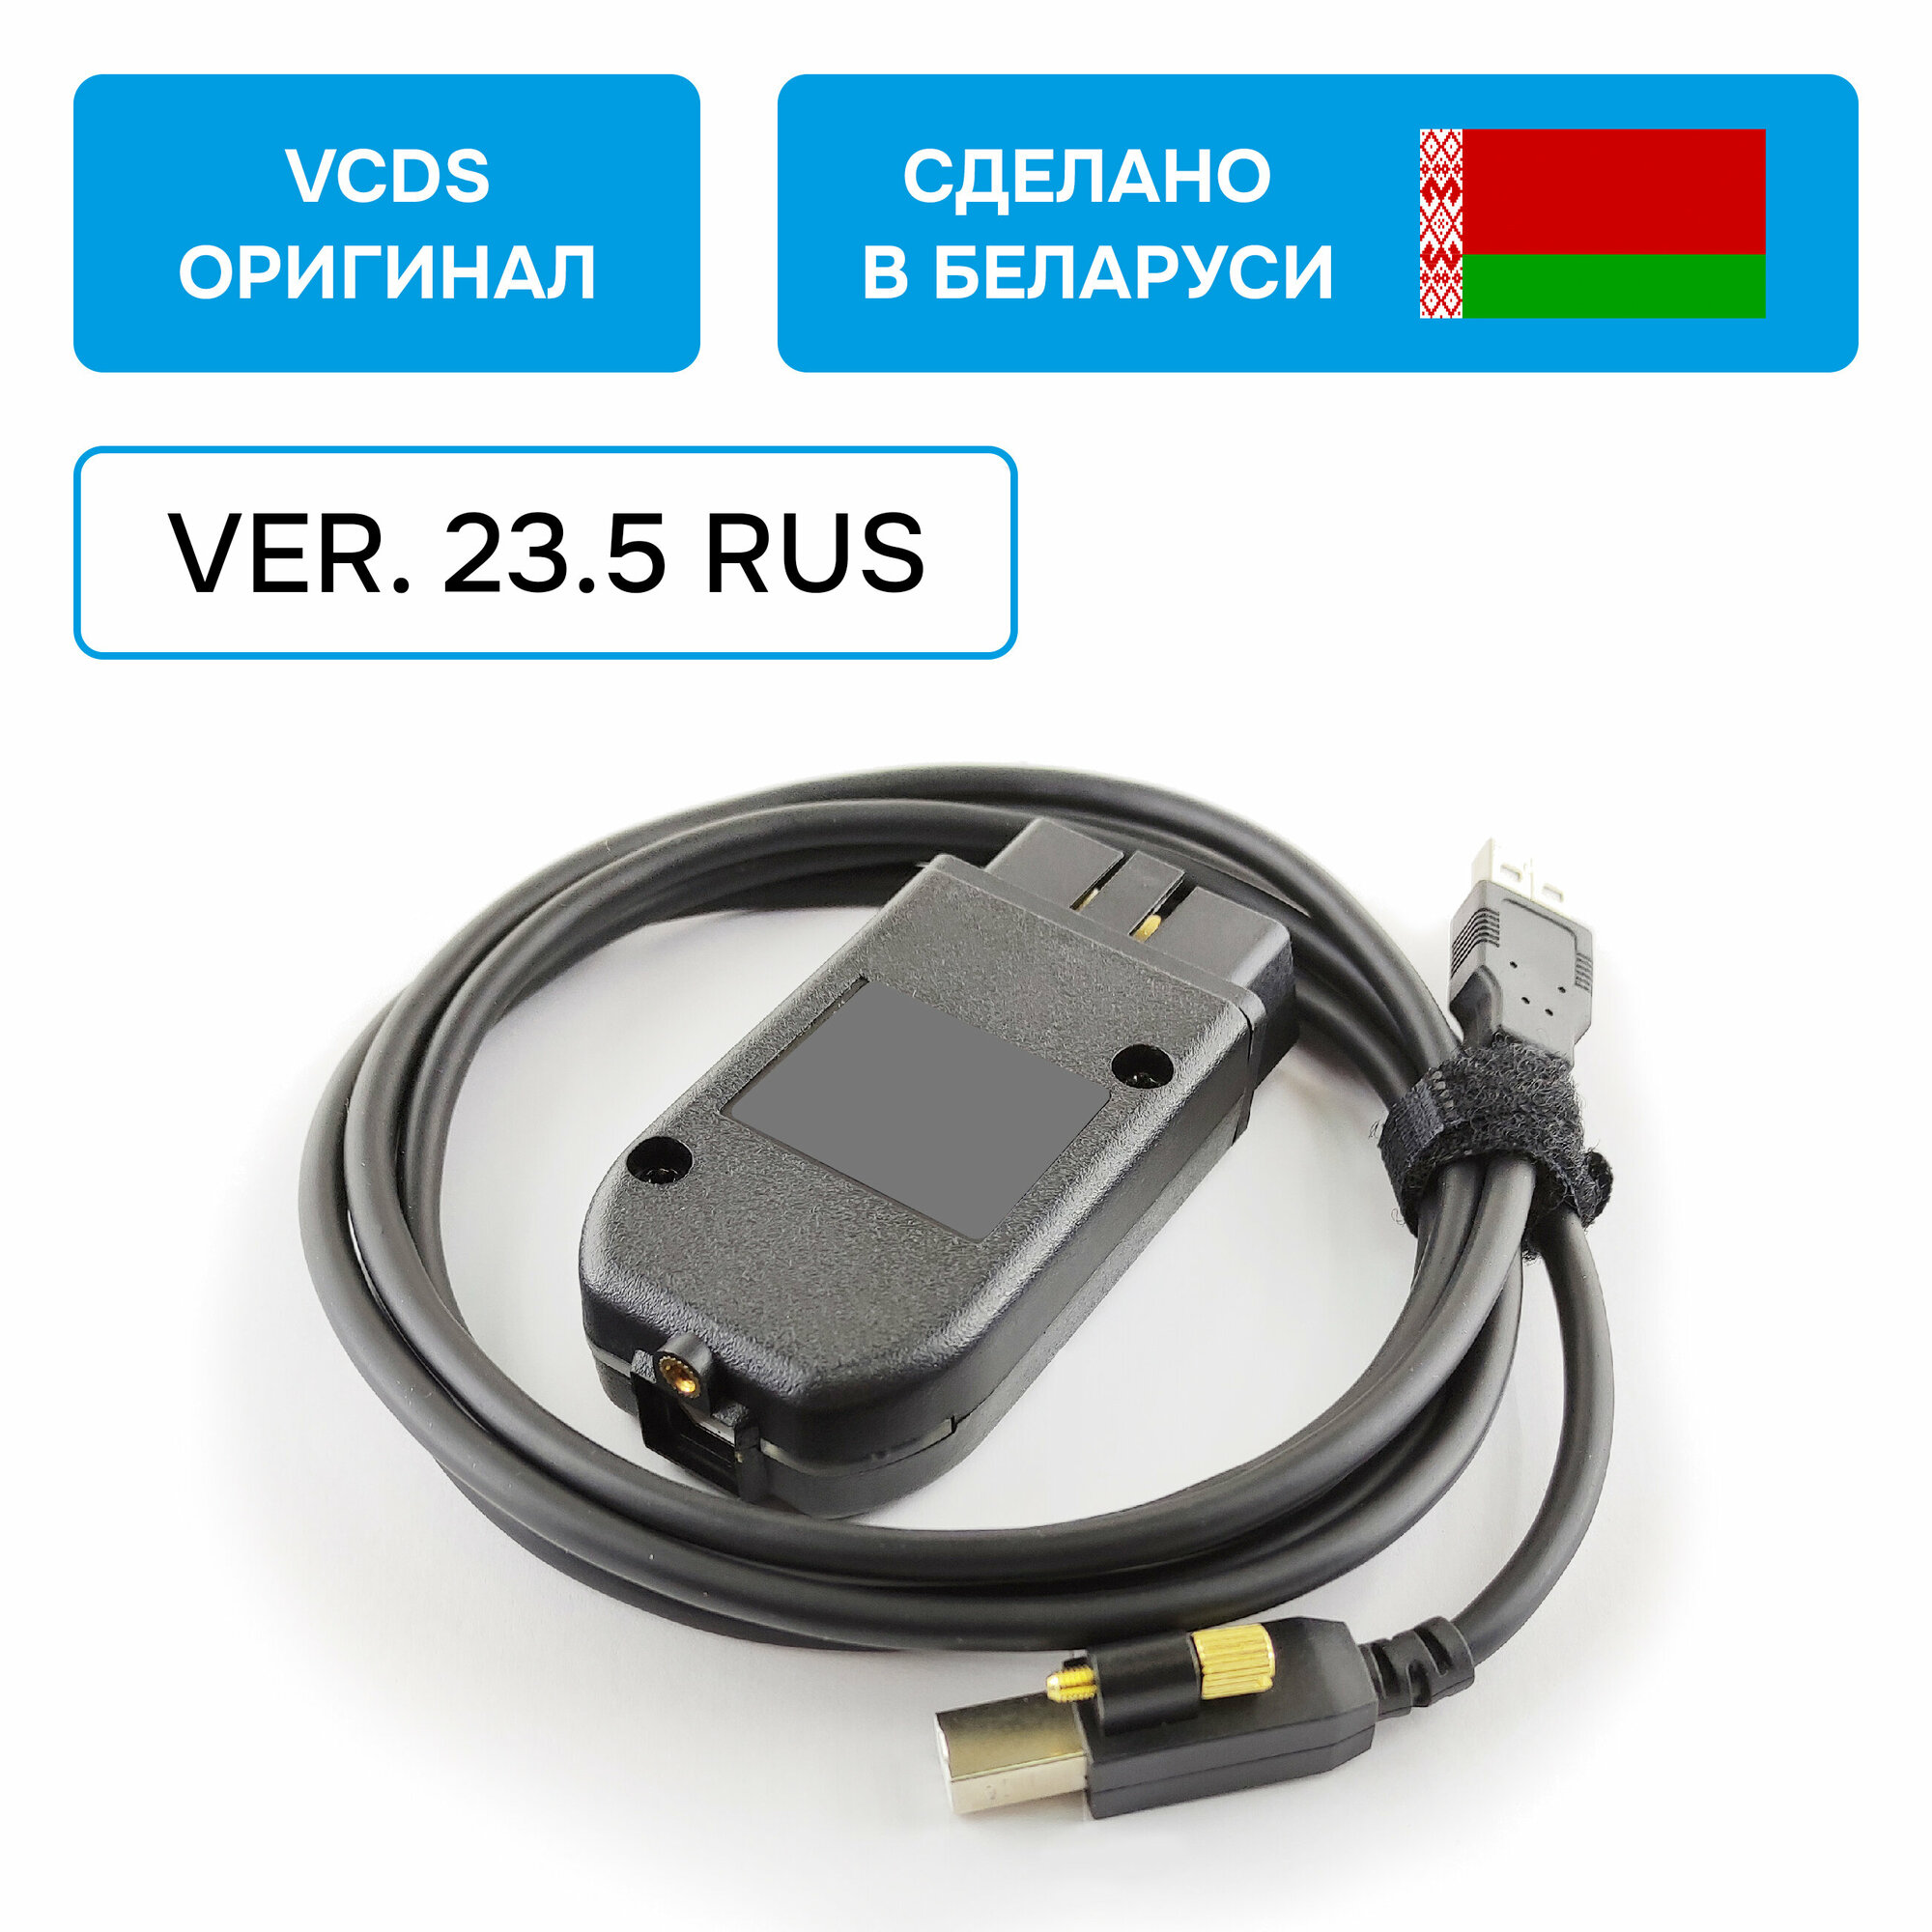 Адаптер Вася Диагност 23.5 Rus VCDS для VAG (оригинал, производство Беларусь)